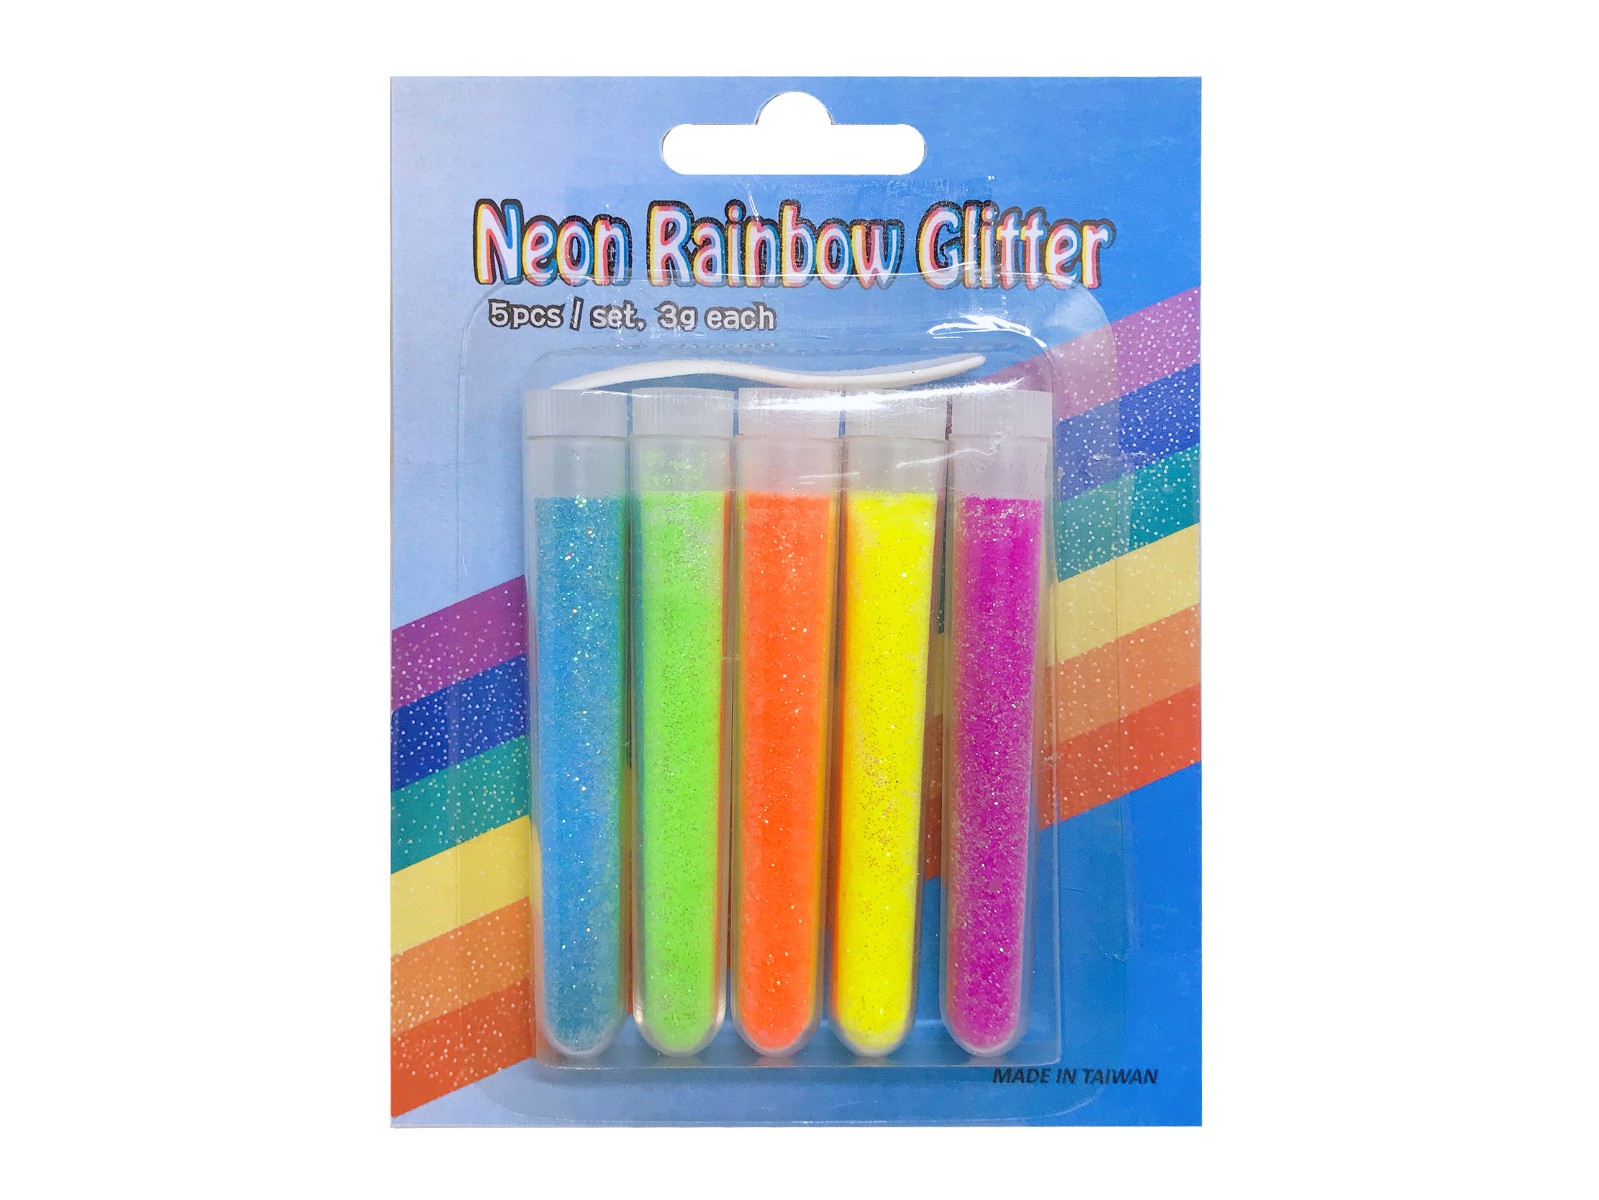 Neon Rainbow glitter五彩螢光蔥